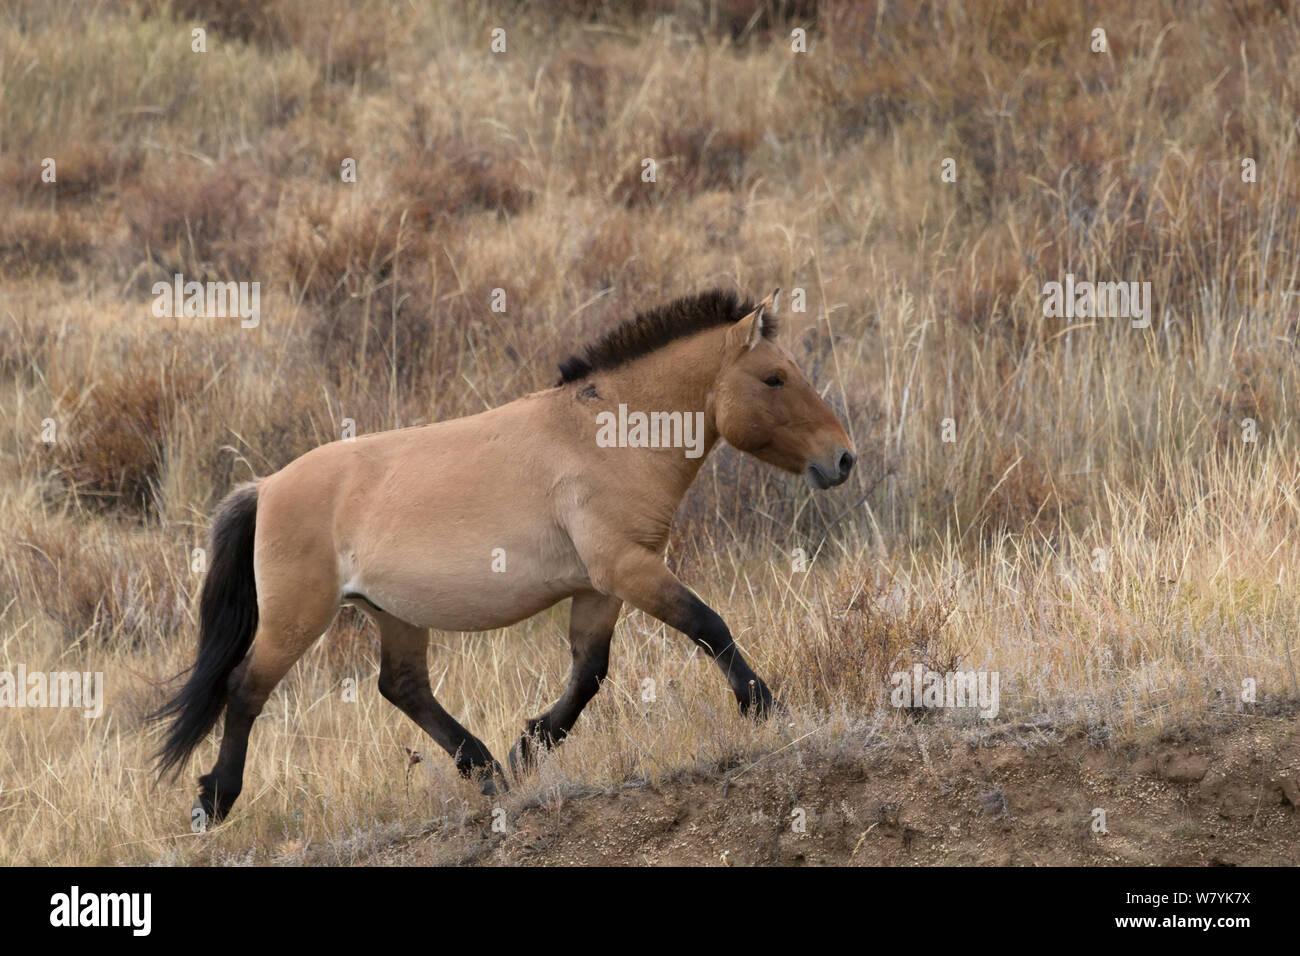 Wild Przewalski / Cavallo Takhi cavallo (Equus ferus przewalskii) allevamento stallone trotto. Hustai National Park, Tuv Provincia, Mongolia. Specie in via di estinzione. Settembre. Foto Stock